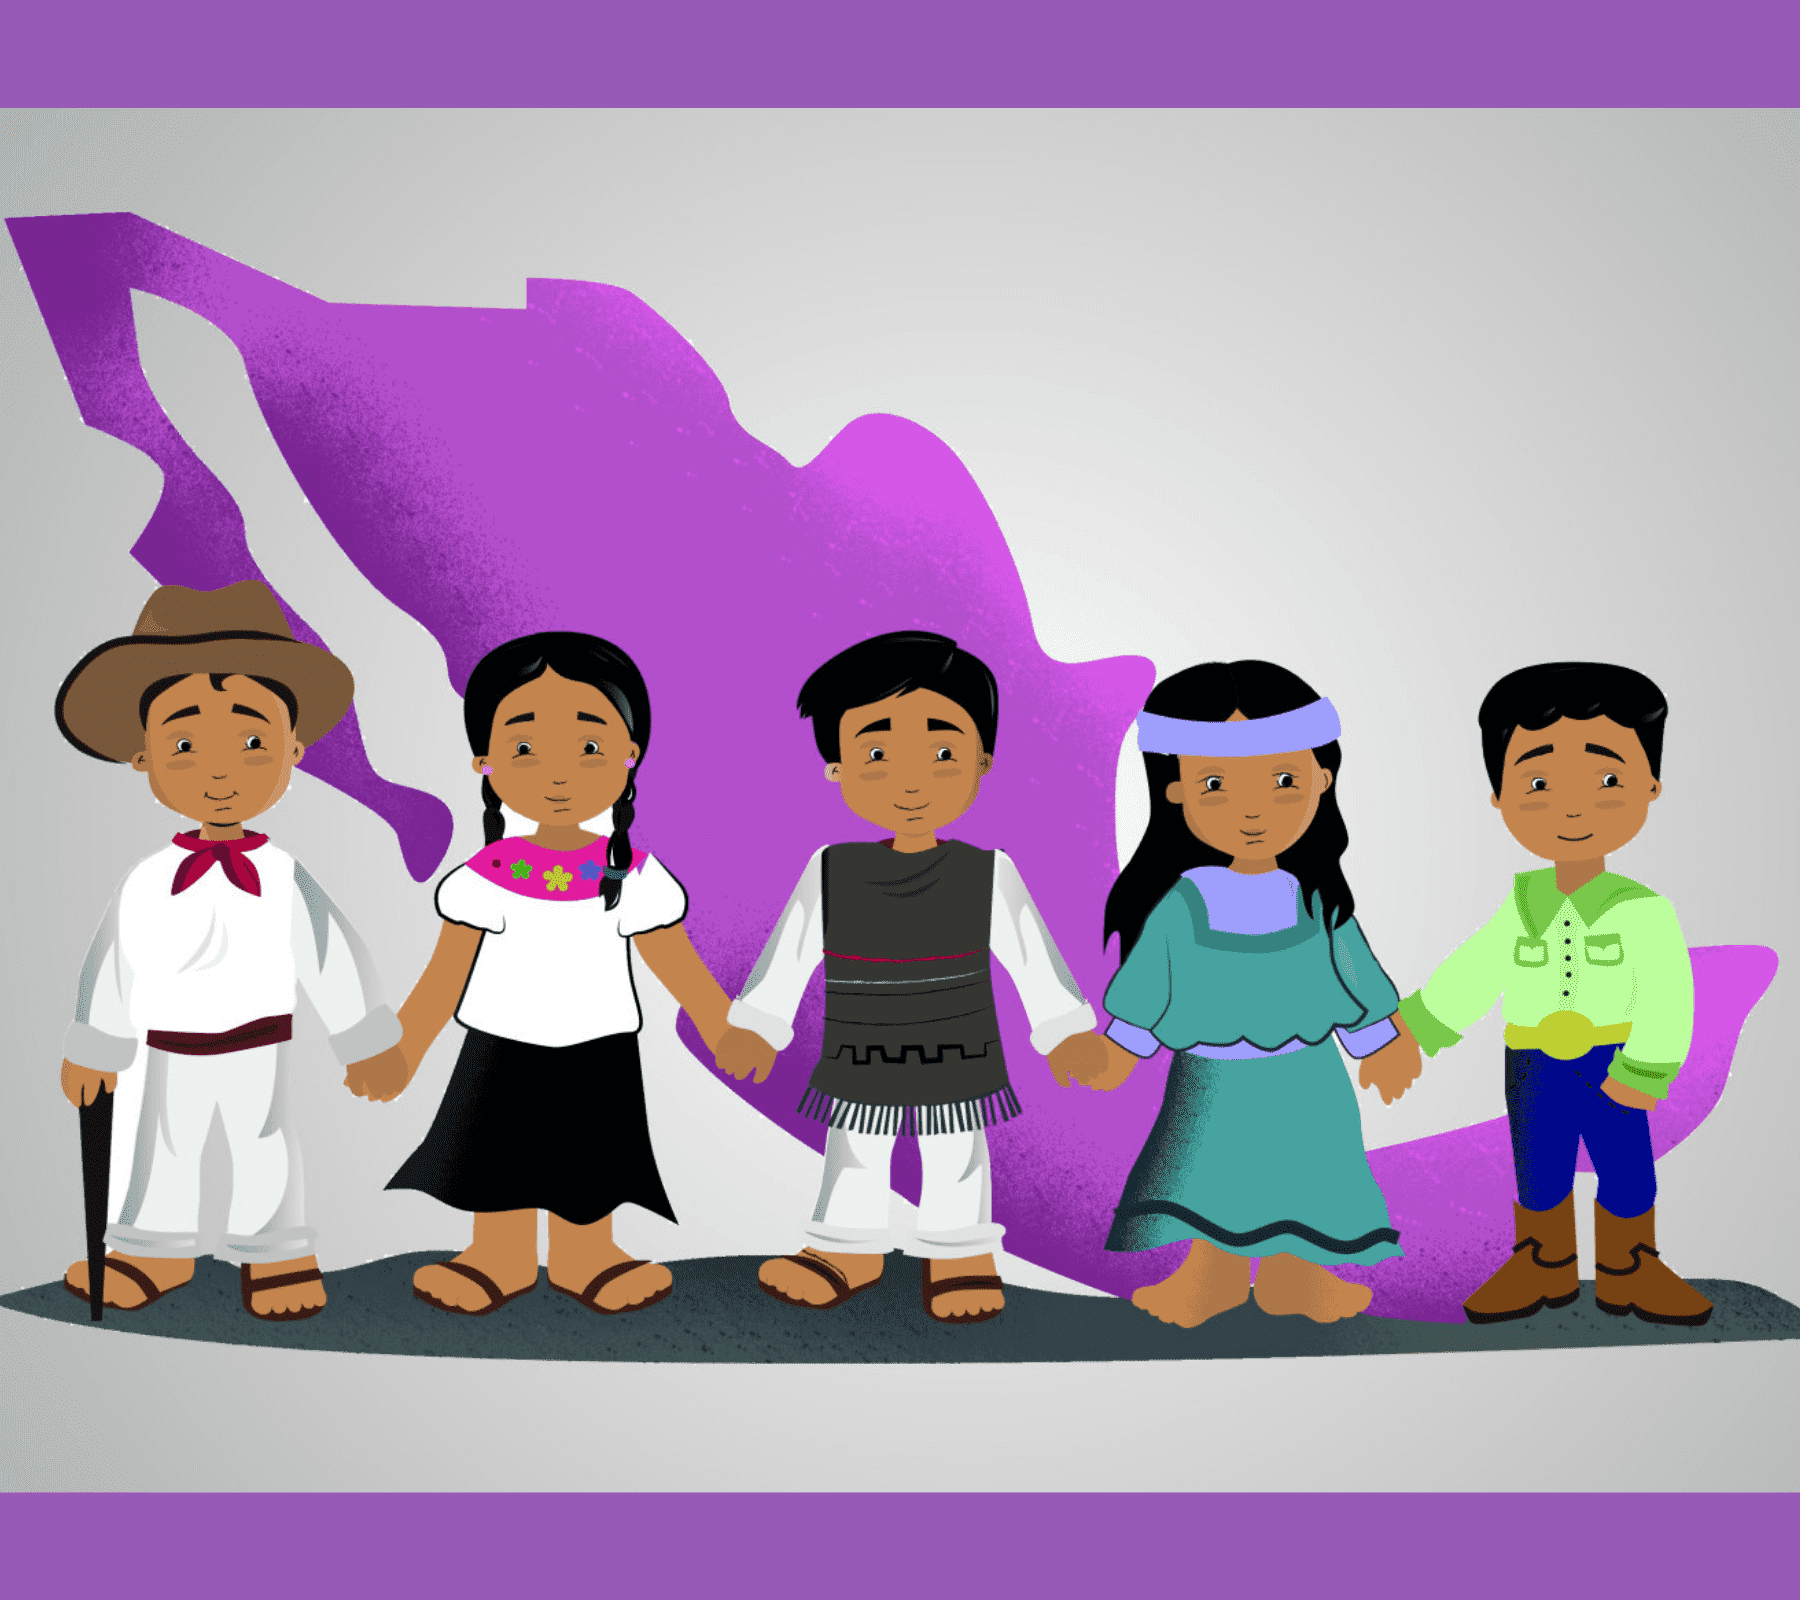 Libros infantiles escritos en lenguas indígenas mexicanas